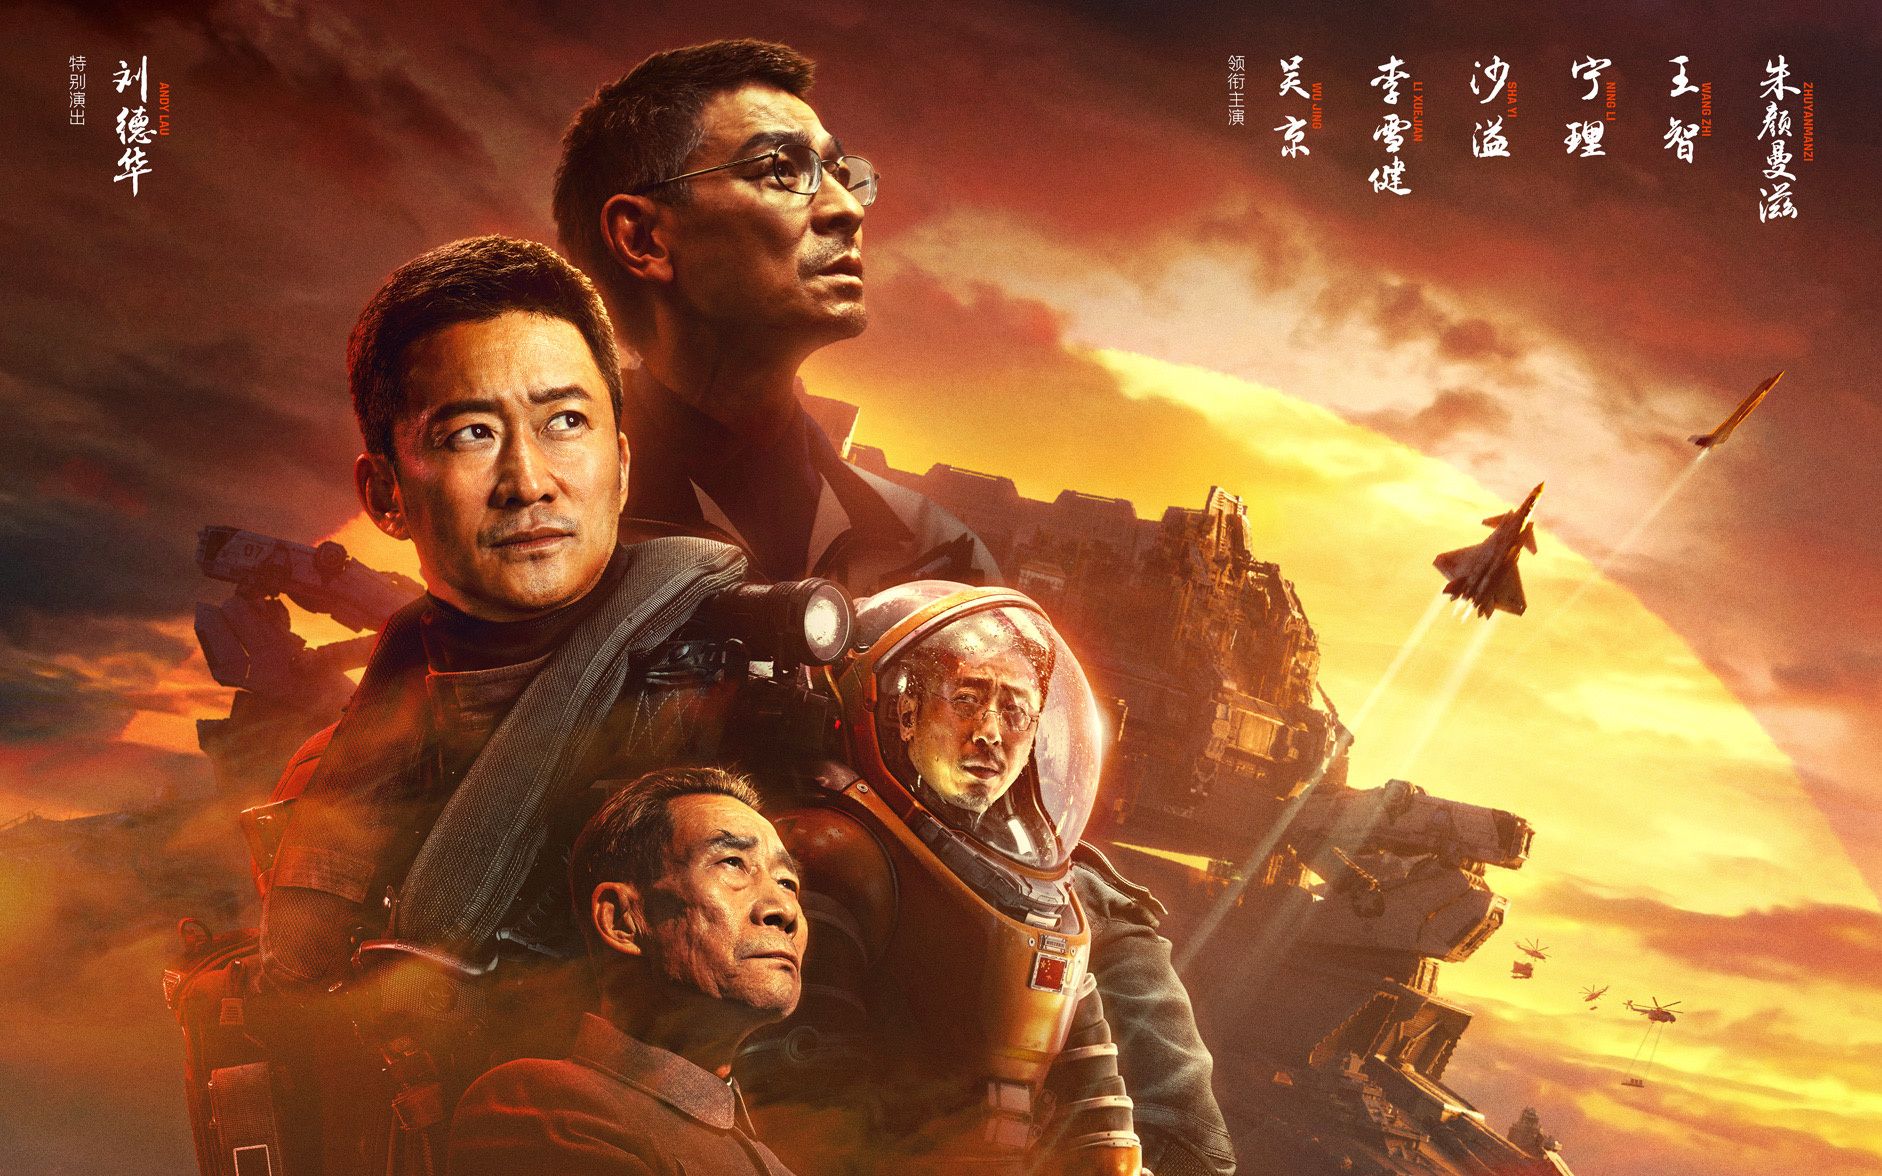 《流浪地球2》发布国外版海报及国产科幻剧《三体2:黑暗森林》确定